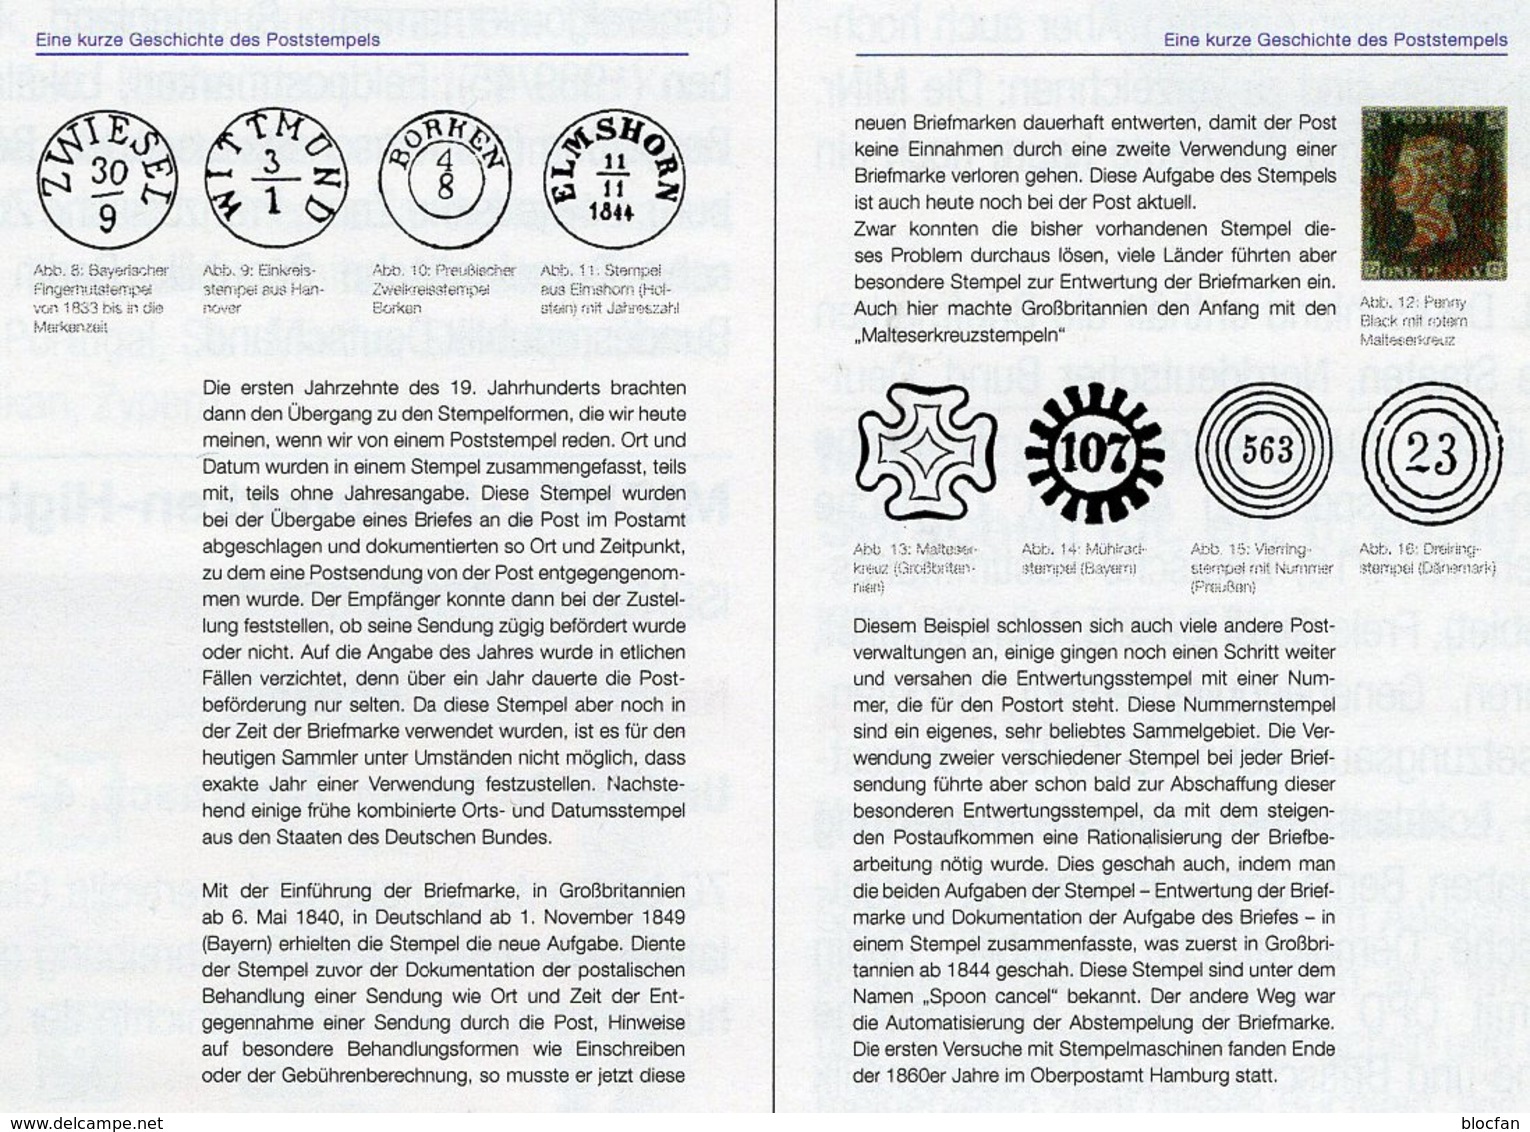 MICHEL Stempel Verstehen Ratgeber 2020 Neu 50€ Briefmarken Stempelarten Wert Bestimmen Stamps ISBN978 3 95402 252 6 - Ed. Spéciales